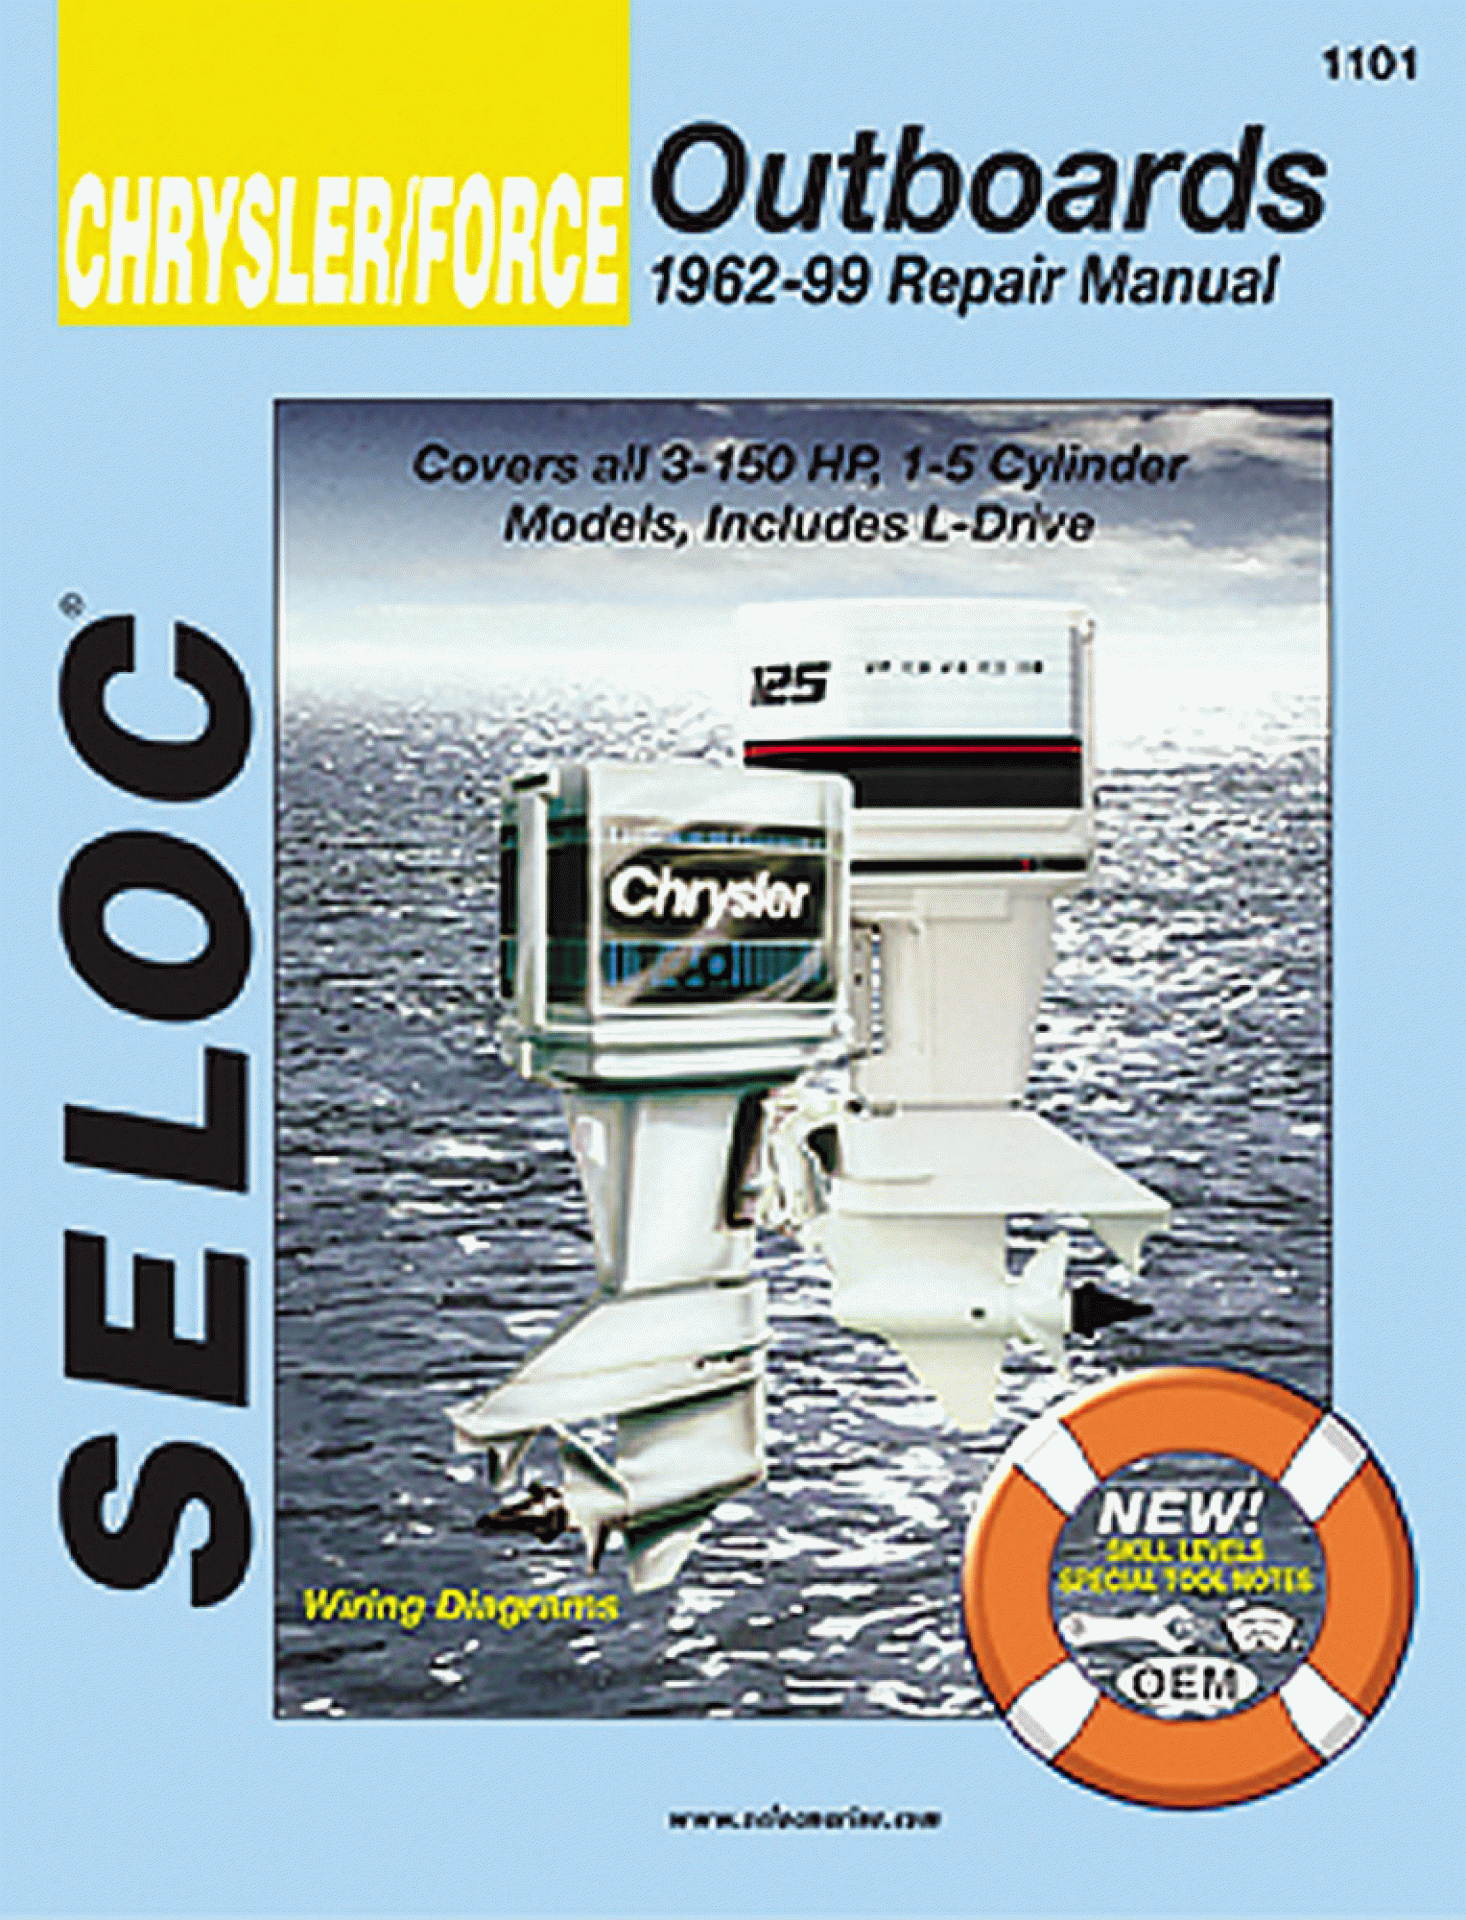 SELOC PUBLISHING | 18-01101 | REPAIR MANUAL Chrysler/Force Outboards Repair 1962-1999